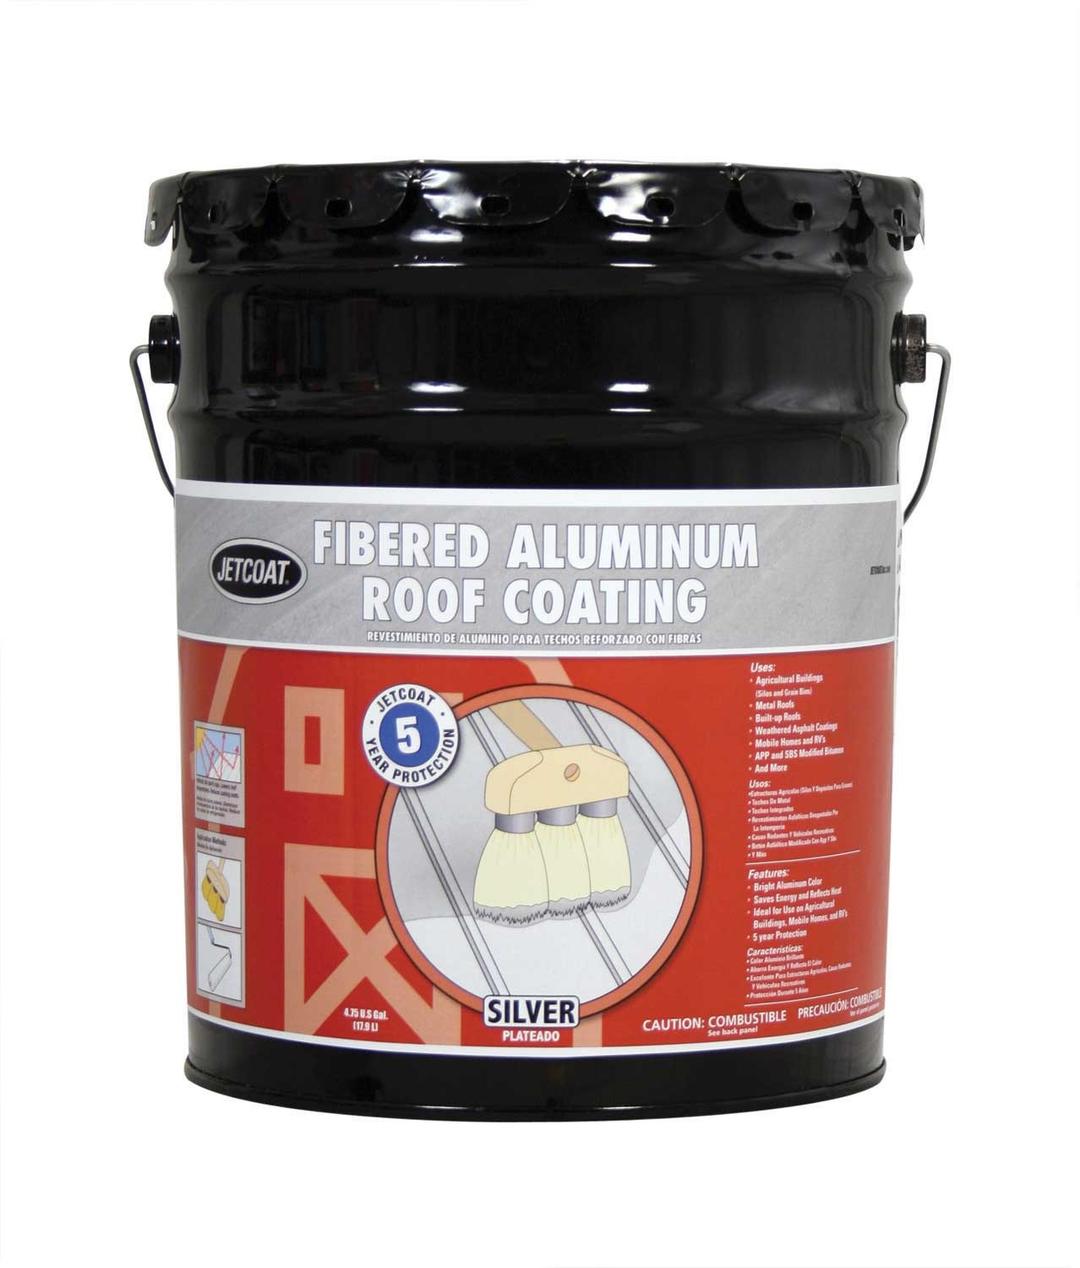 JetCoat Roof Coating Fib Aluminum, 4.75 Gallon - 66475/55815